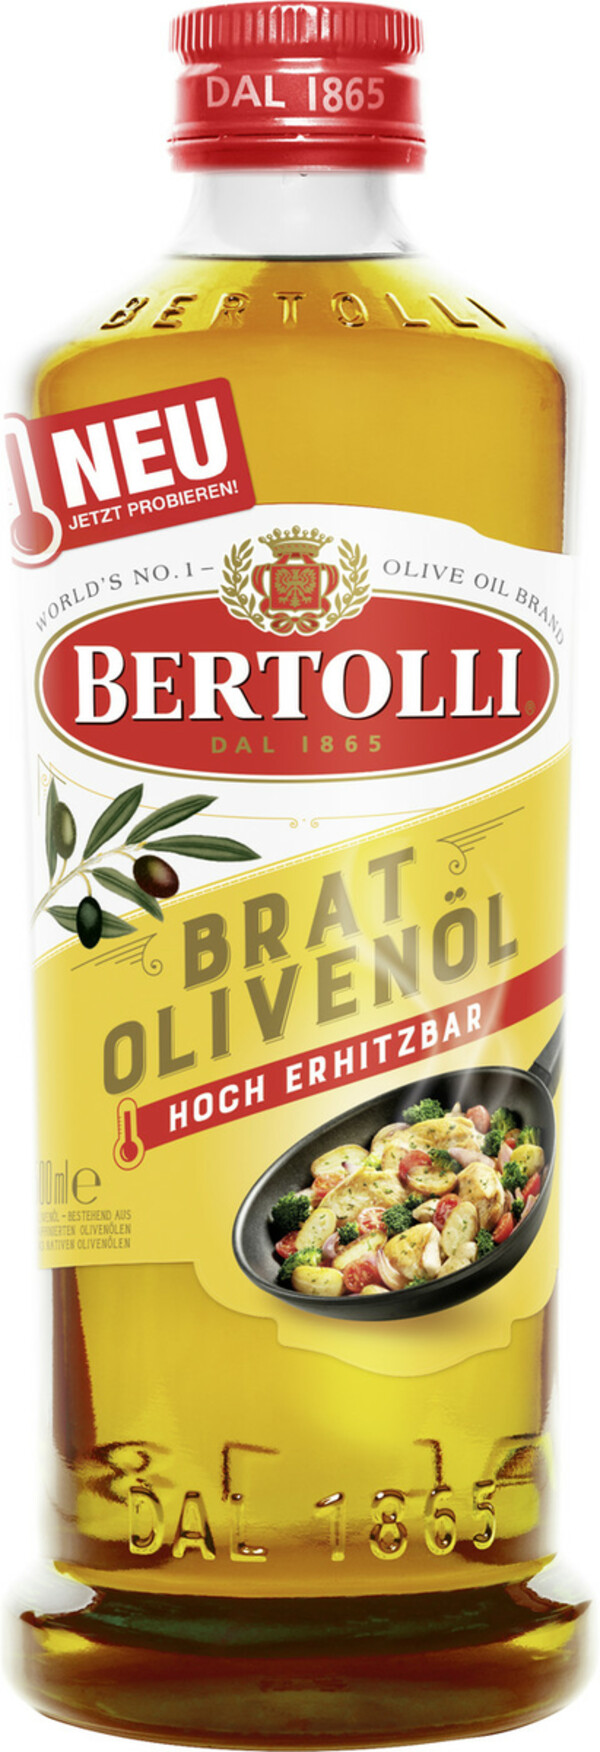 Bild 1 von Bertolli Bratolivenöl 0,5L